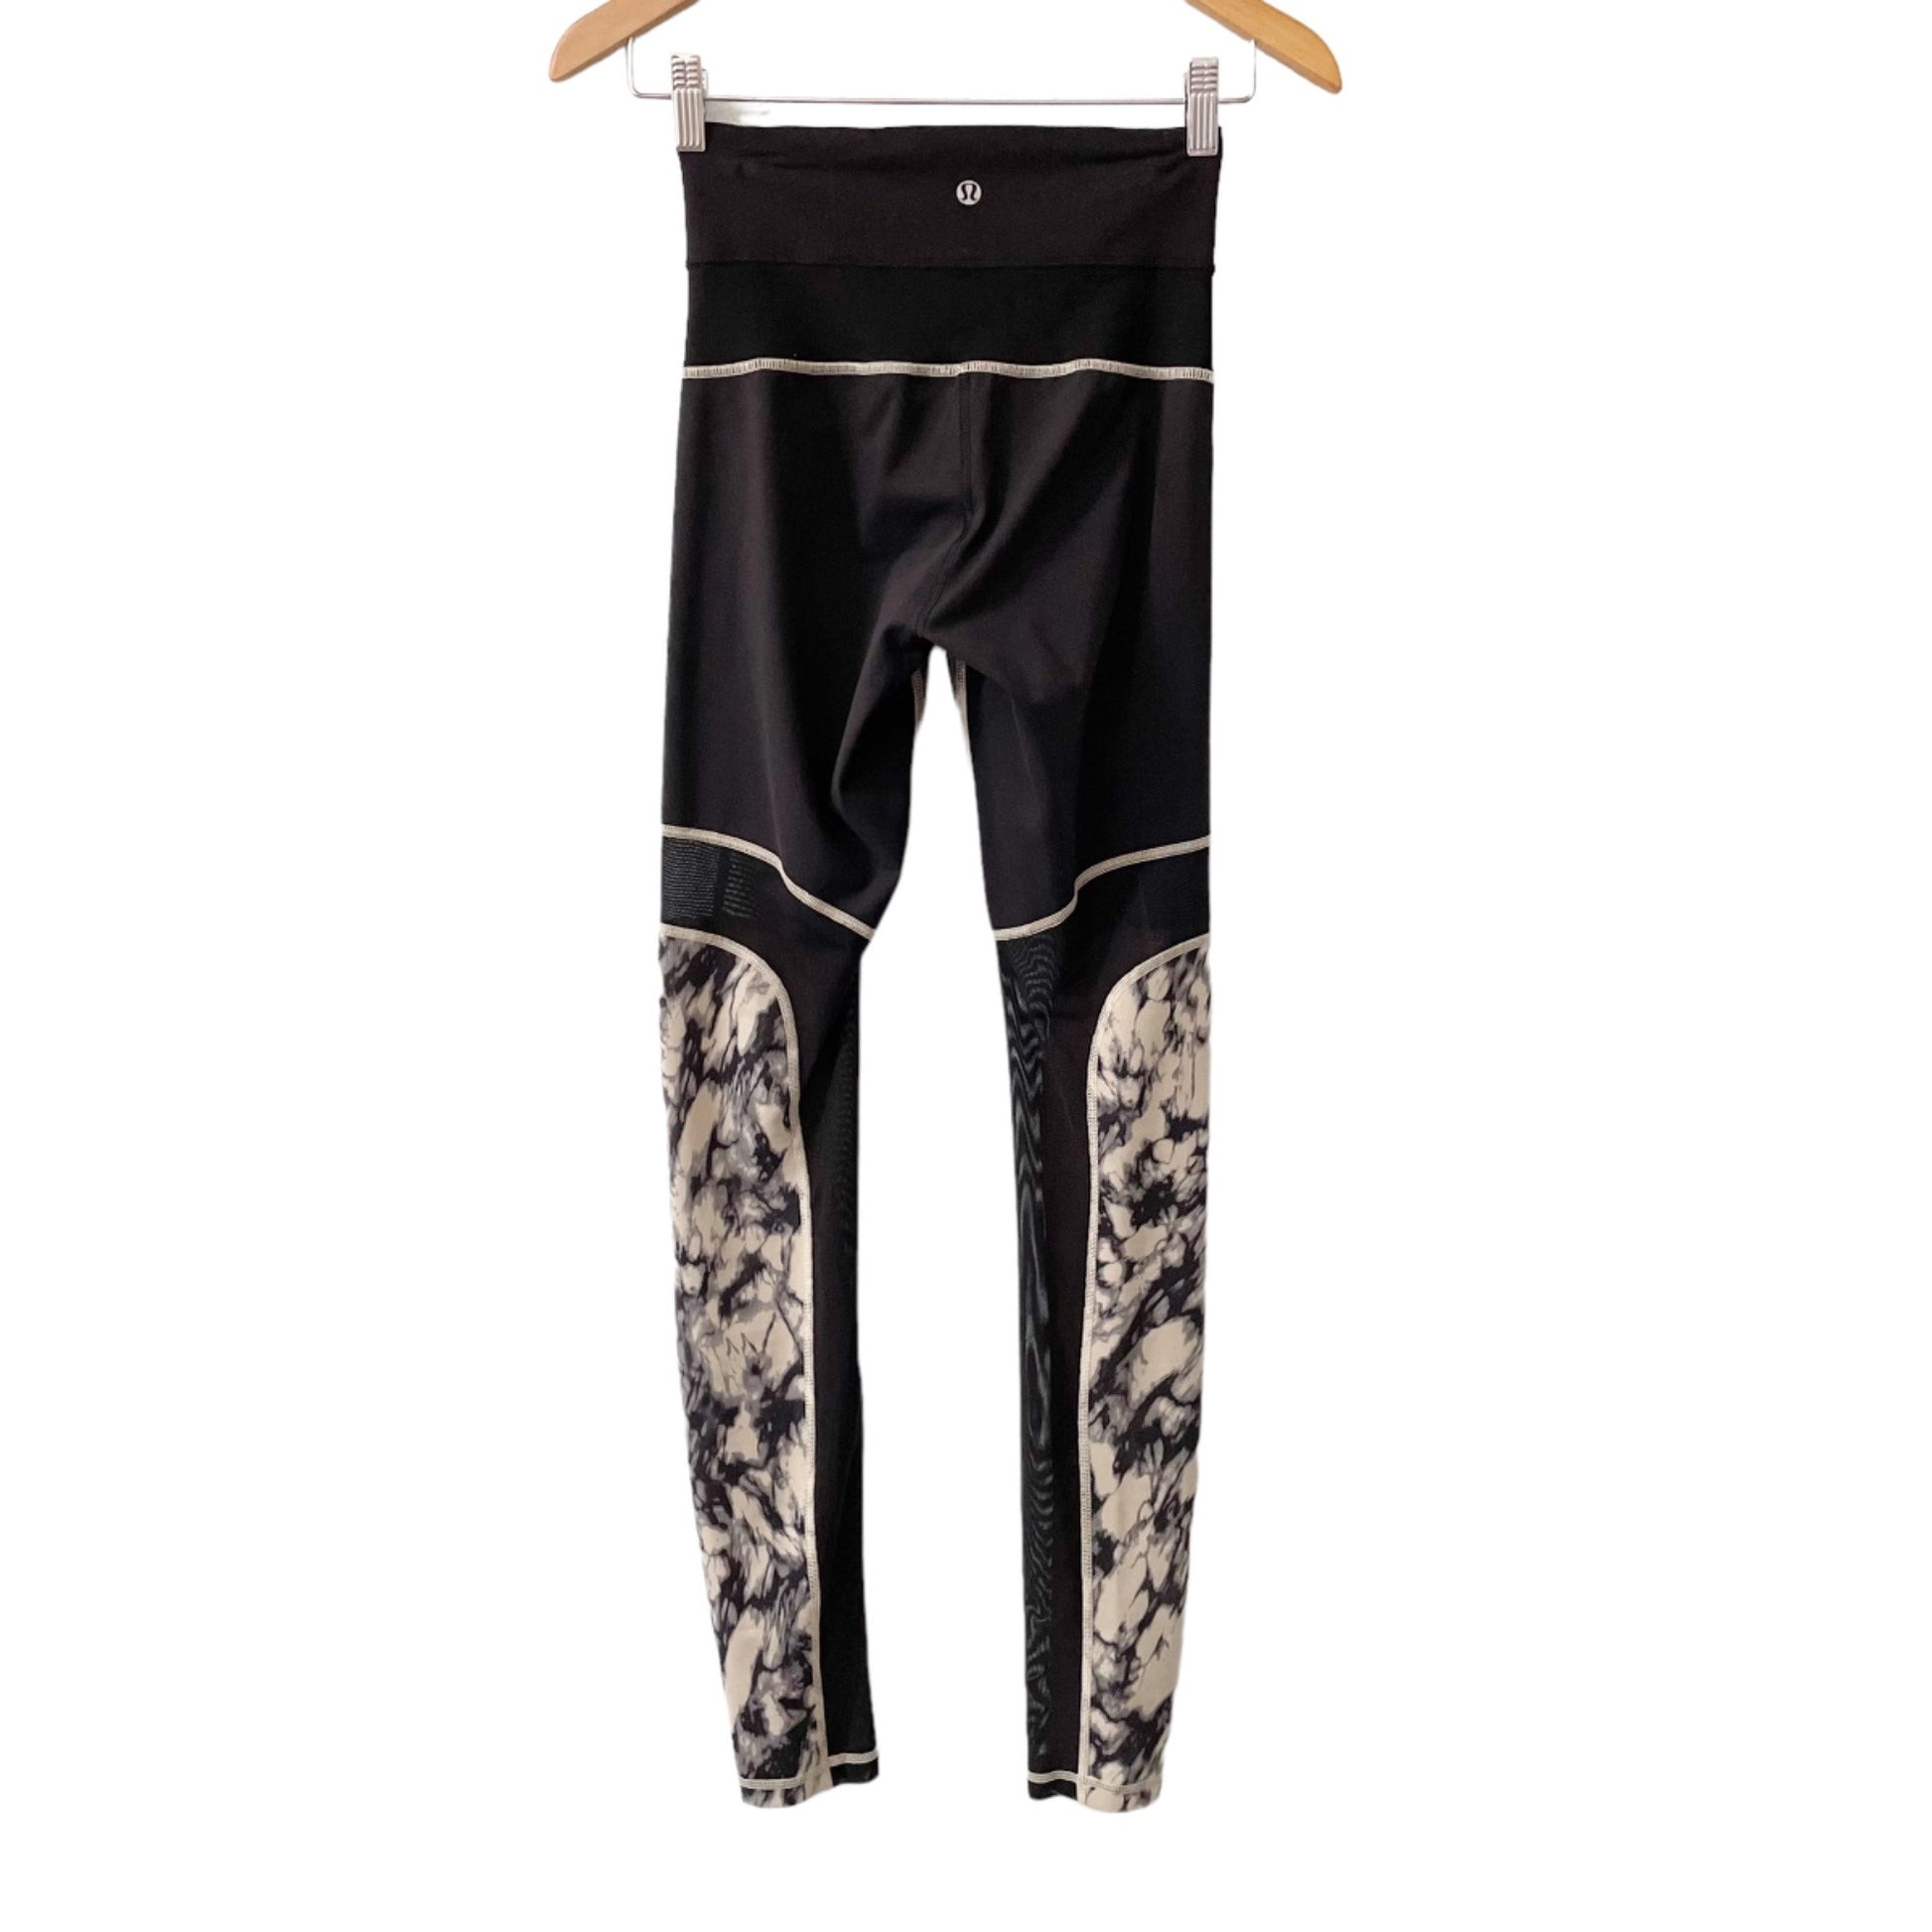 lululemon leggings size 4 womens high waisted marble gray black mesh 